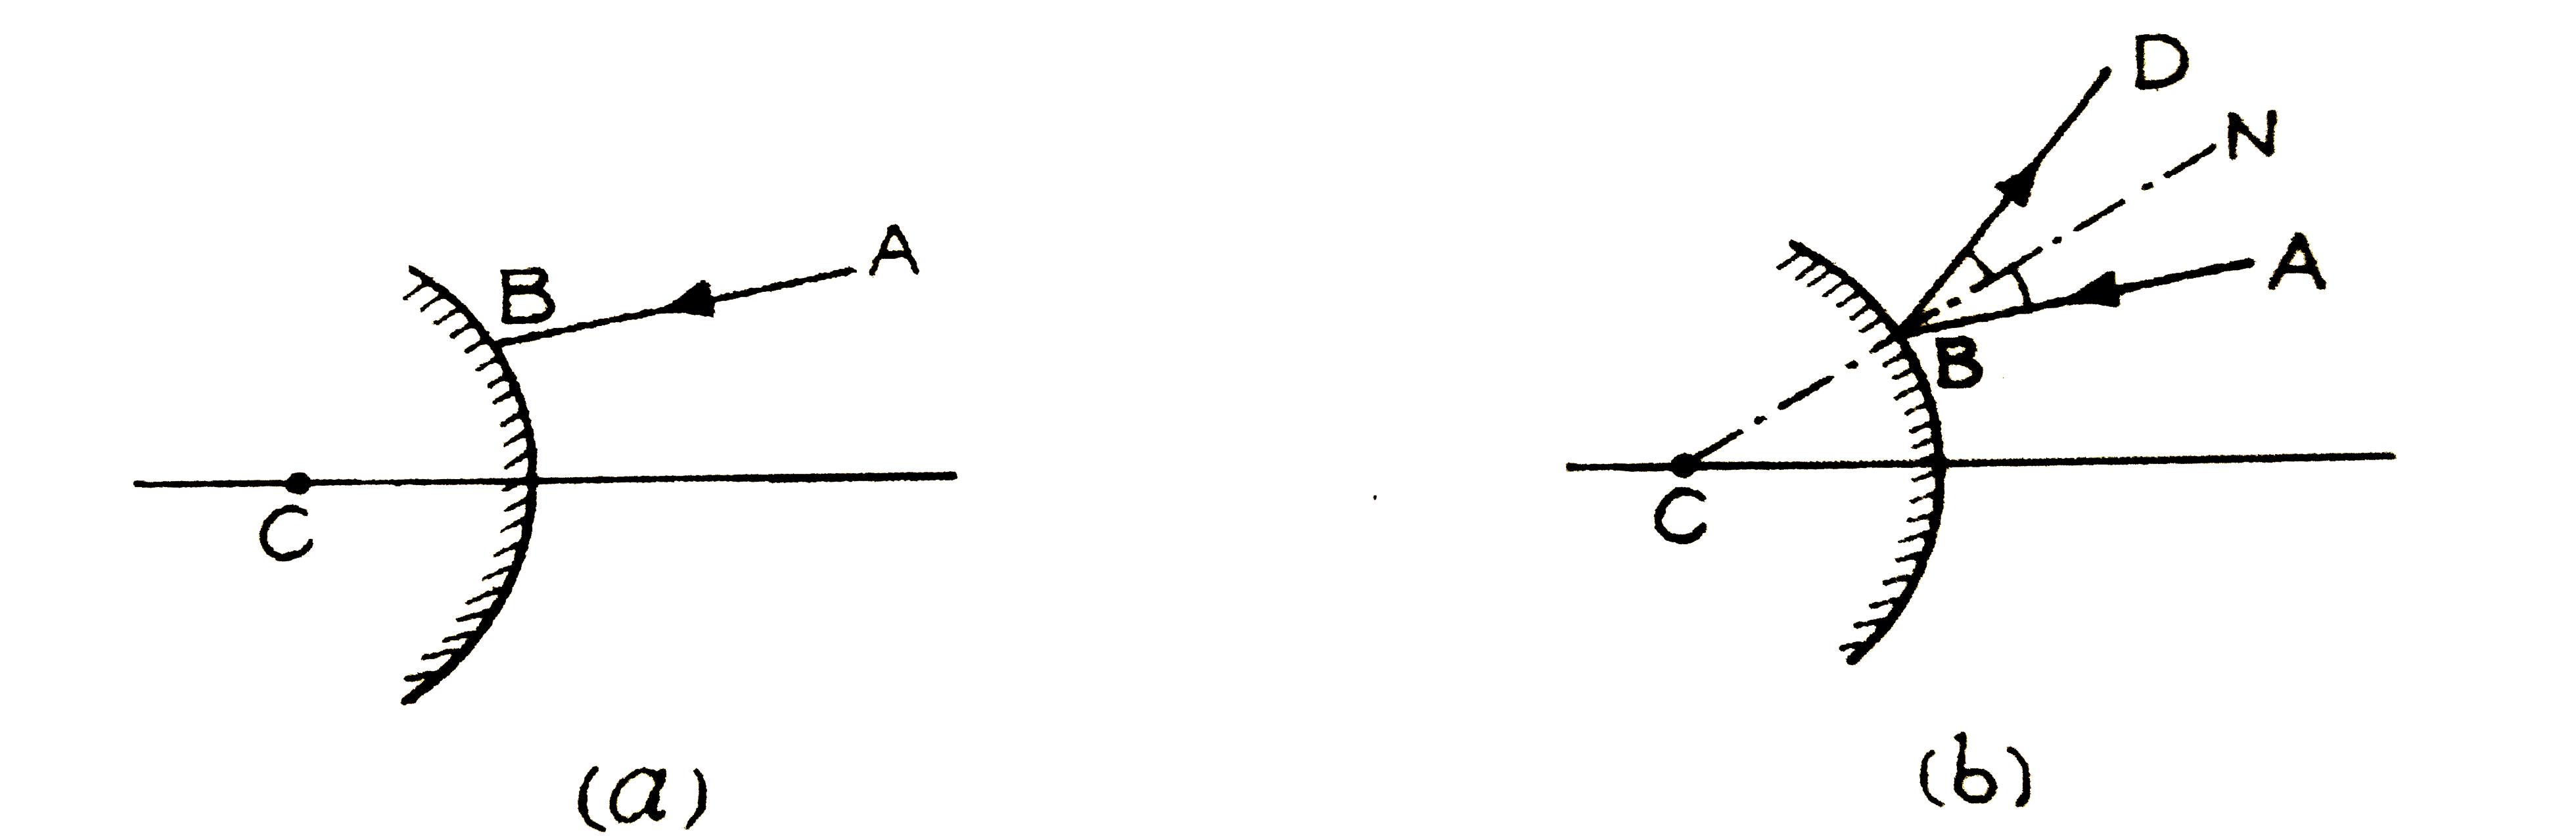 निम्नांकित चित्र (a) में C एक उत्तल दर्पण का वक्रता-केन्द्र है। AB एक आपतित किरण है। इस आरेख को उतर-पुस्तिका पर उतारकर AB की परावर्तित किरण बनाइये।